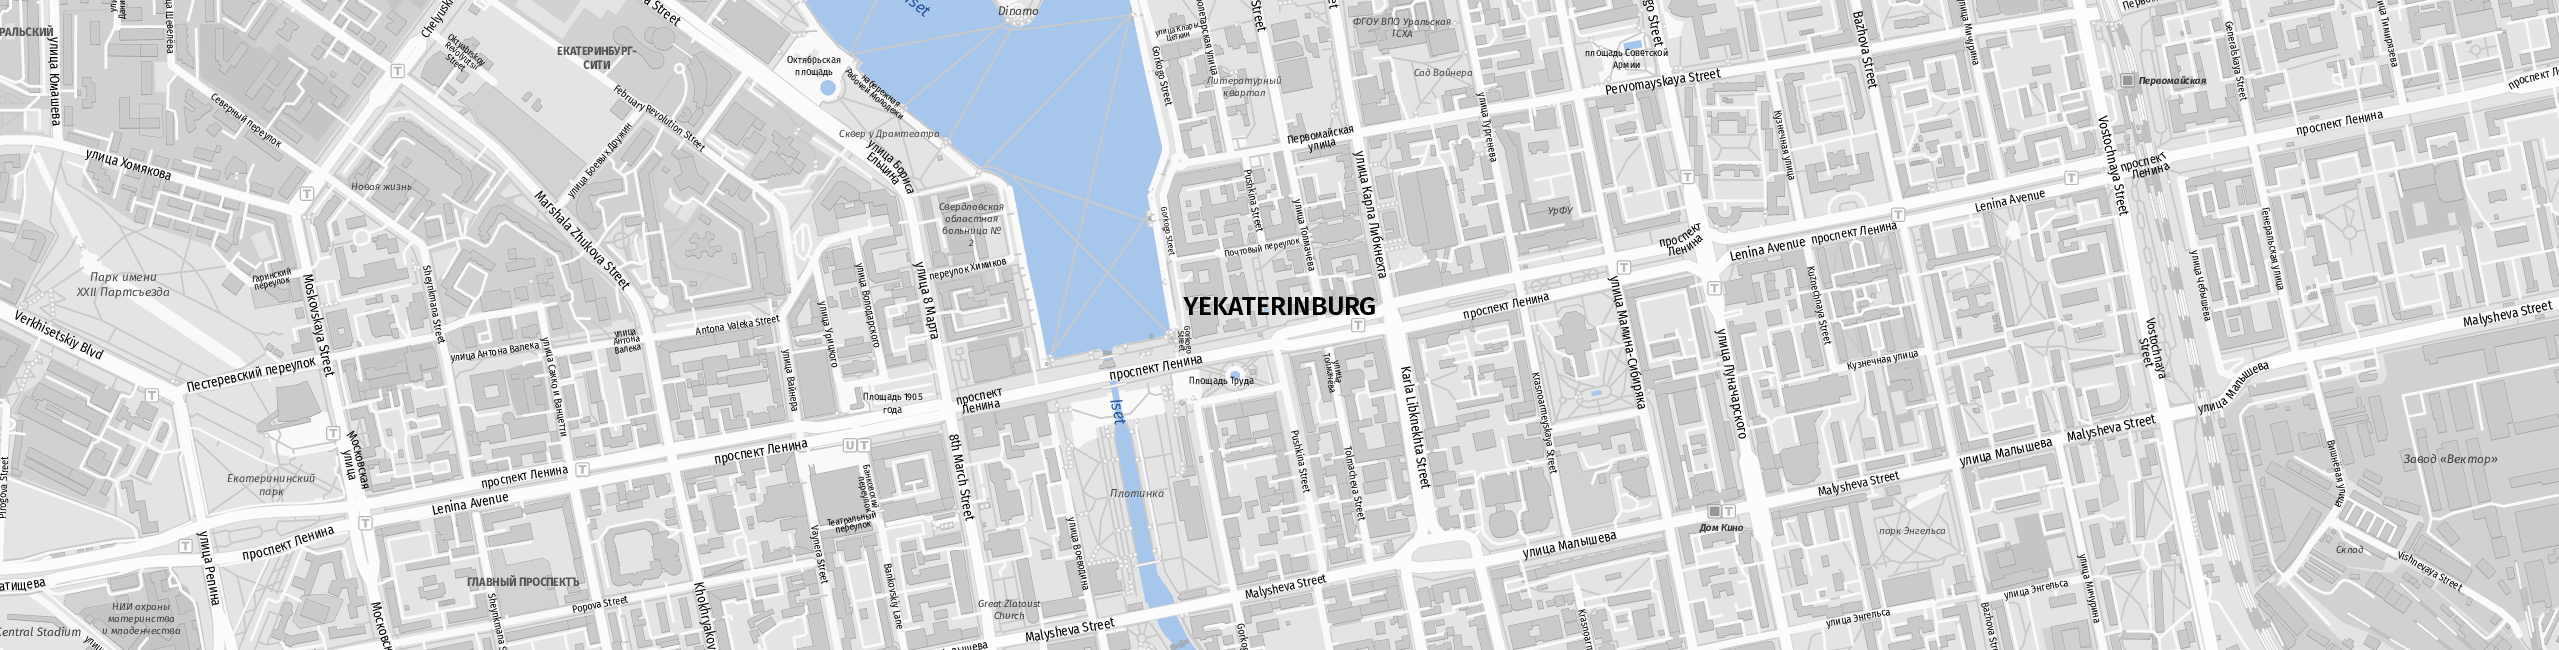 Stadtplan Yekaterinburg zum Downloaden.